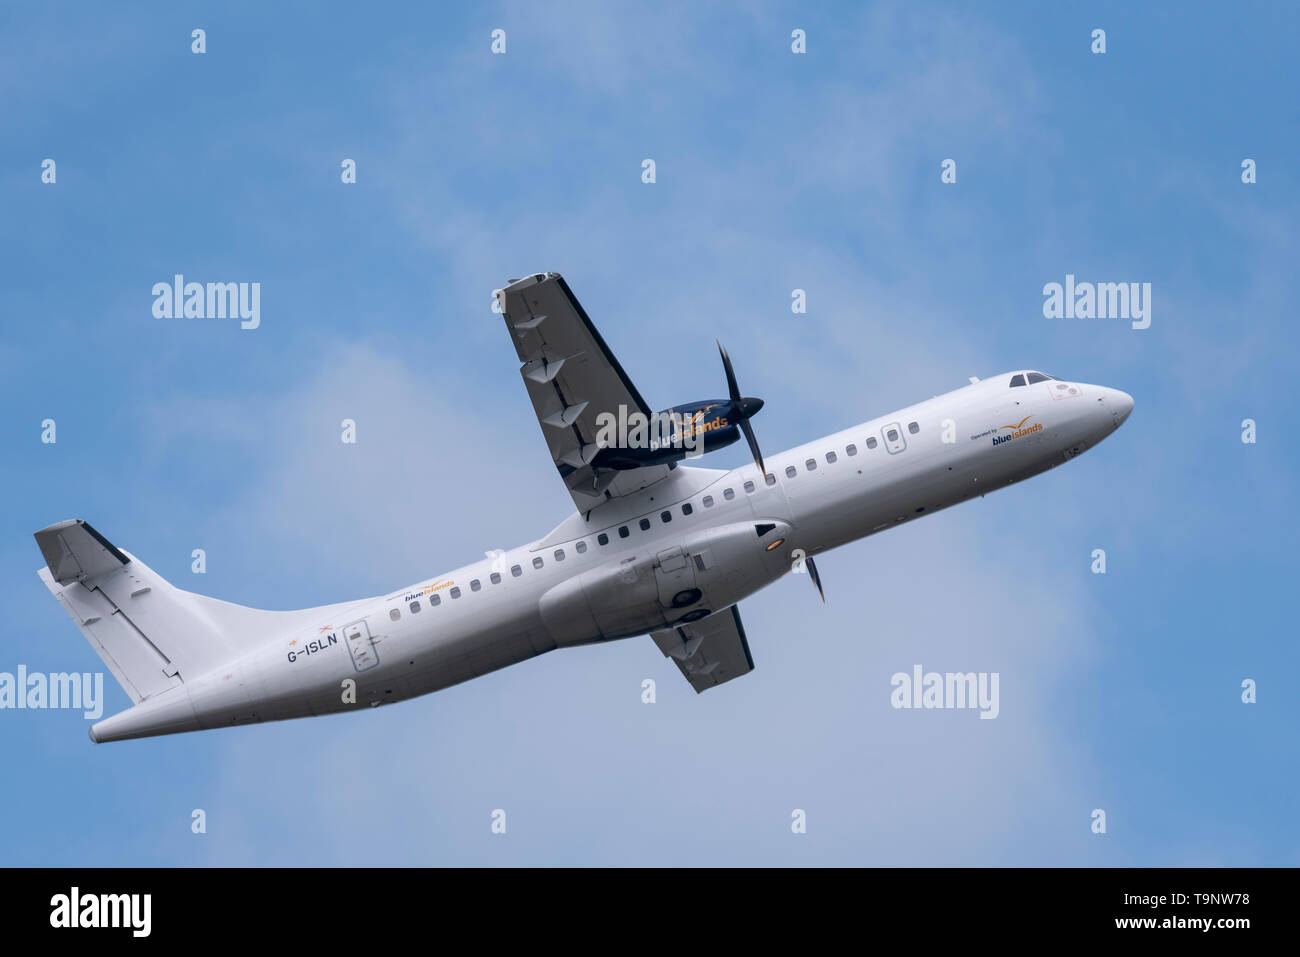 La dernière compagnie aérienne à commencer des vols à partir de l'aéroport d'Essex en expansion est Blue Islands avec un vol quotidien à destination de Guernesey qui démarre aujourd'hui. Leur avion ATR 72 est arrivé dans la matinée et le vol de retour a décollé peu après. Aéroport de Londres Southend Banque D'Images